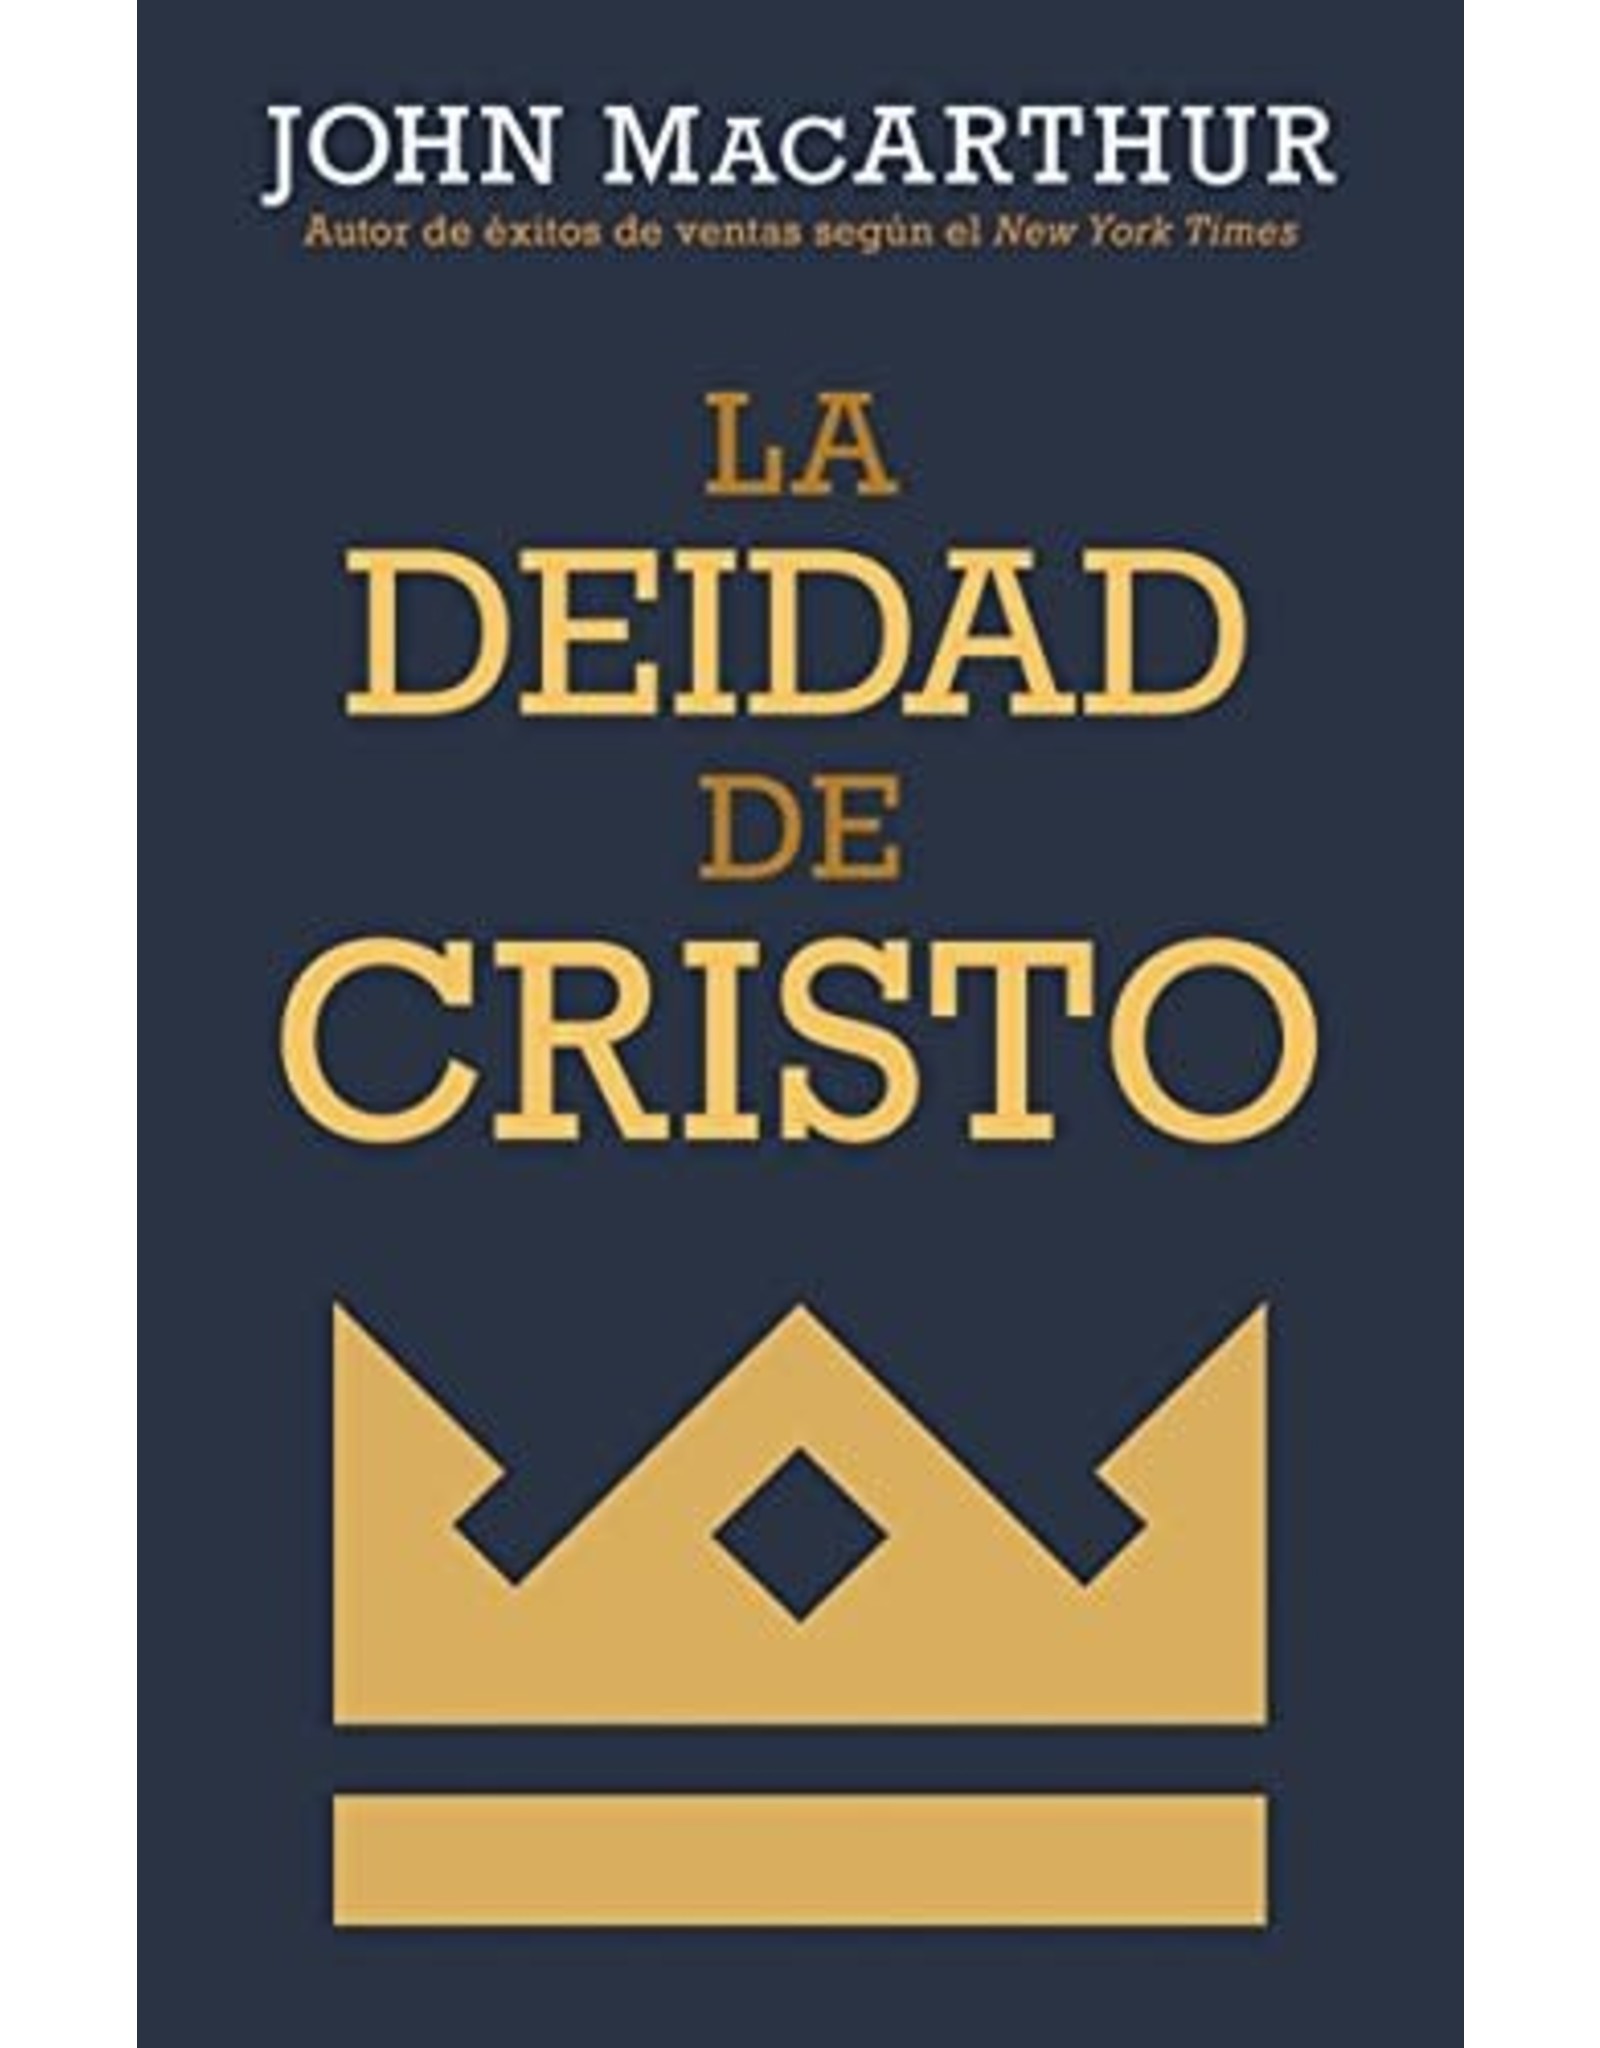 Kregel / Portavoz / Ingram SPAN - La deidad de Cristo (The Deity of Christ in Spanish)